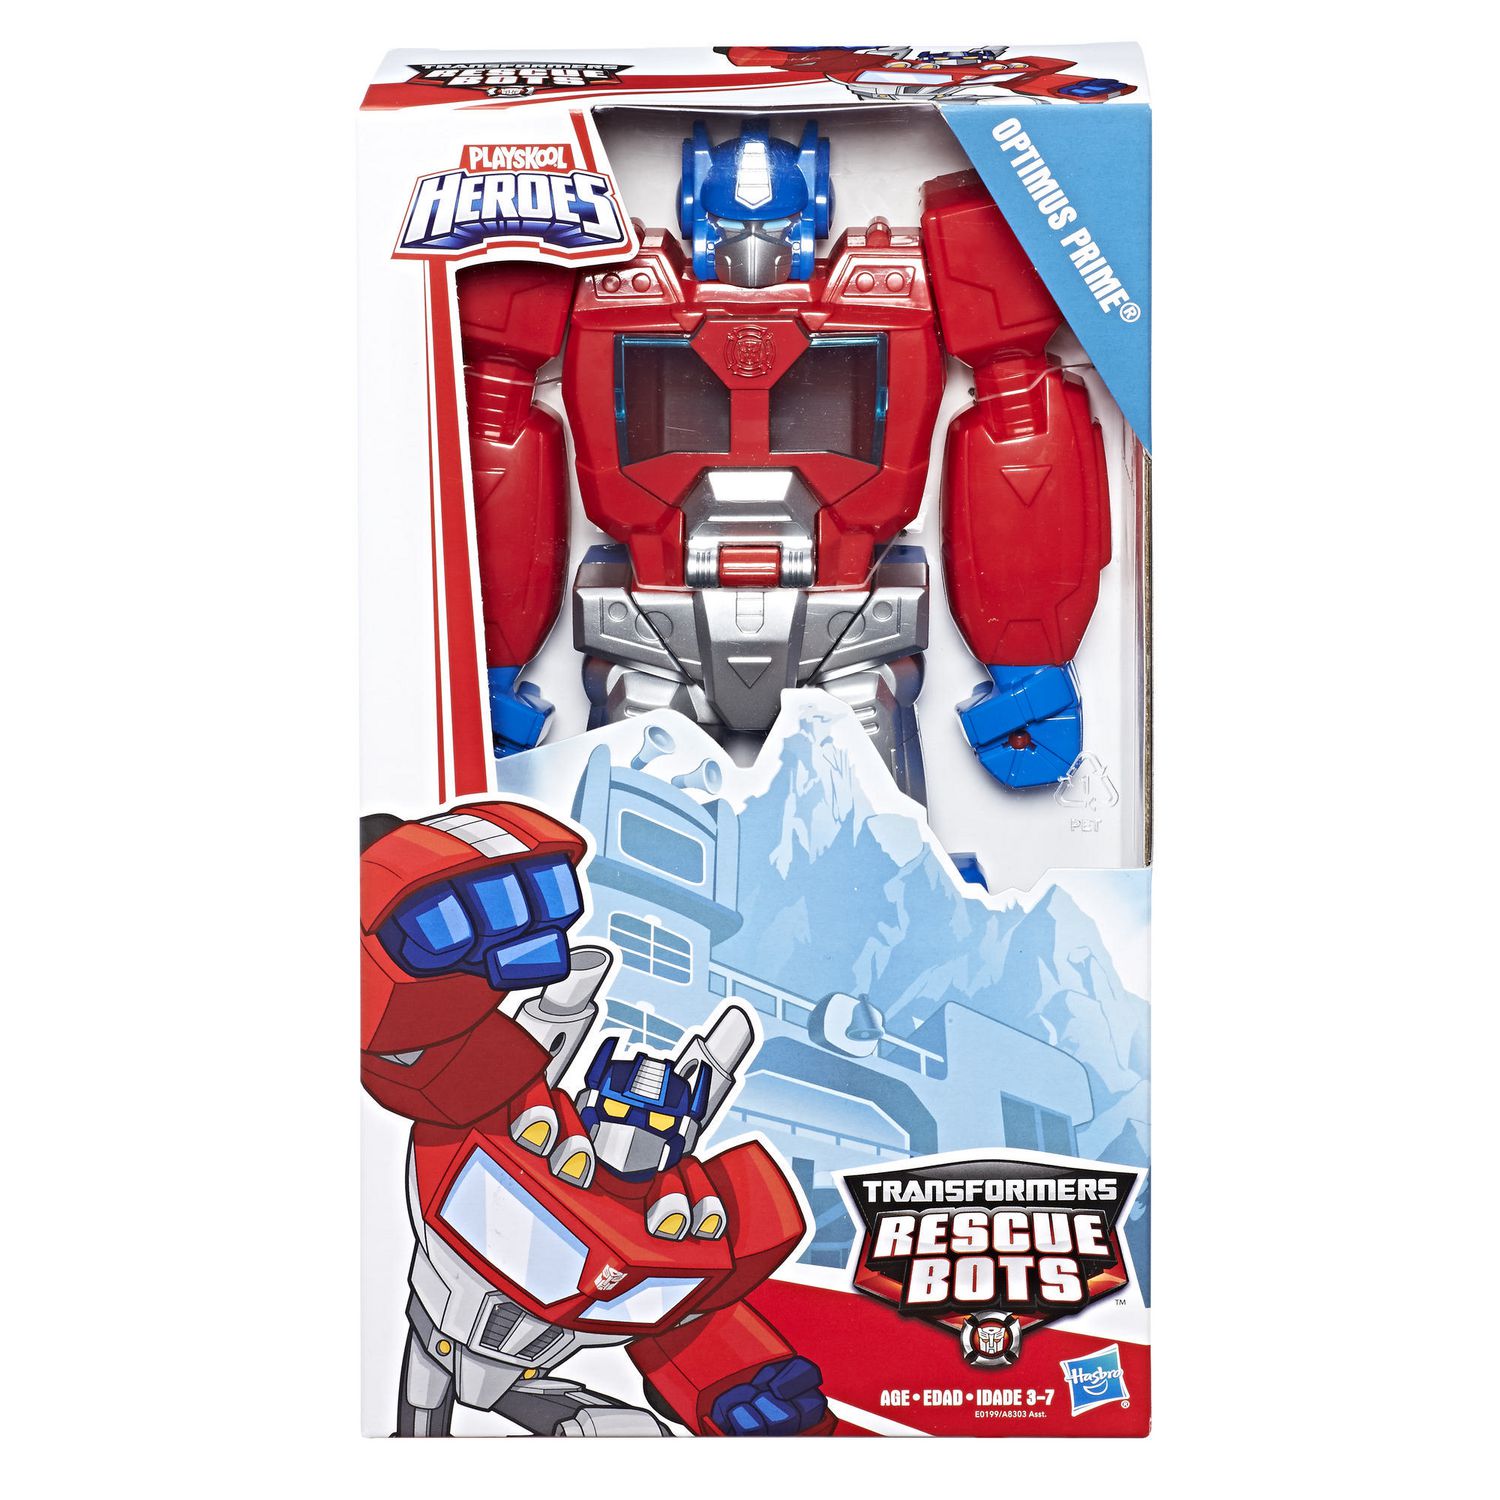 Playskool Heroe Transformers Rescue Bots Optomius Prime Variant